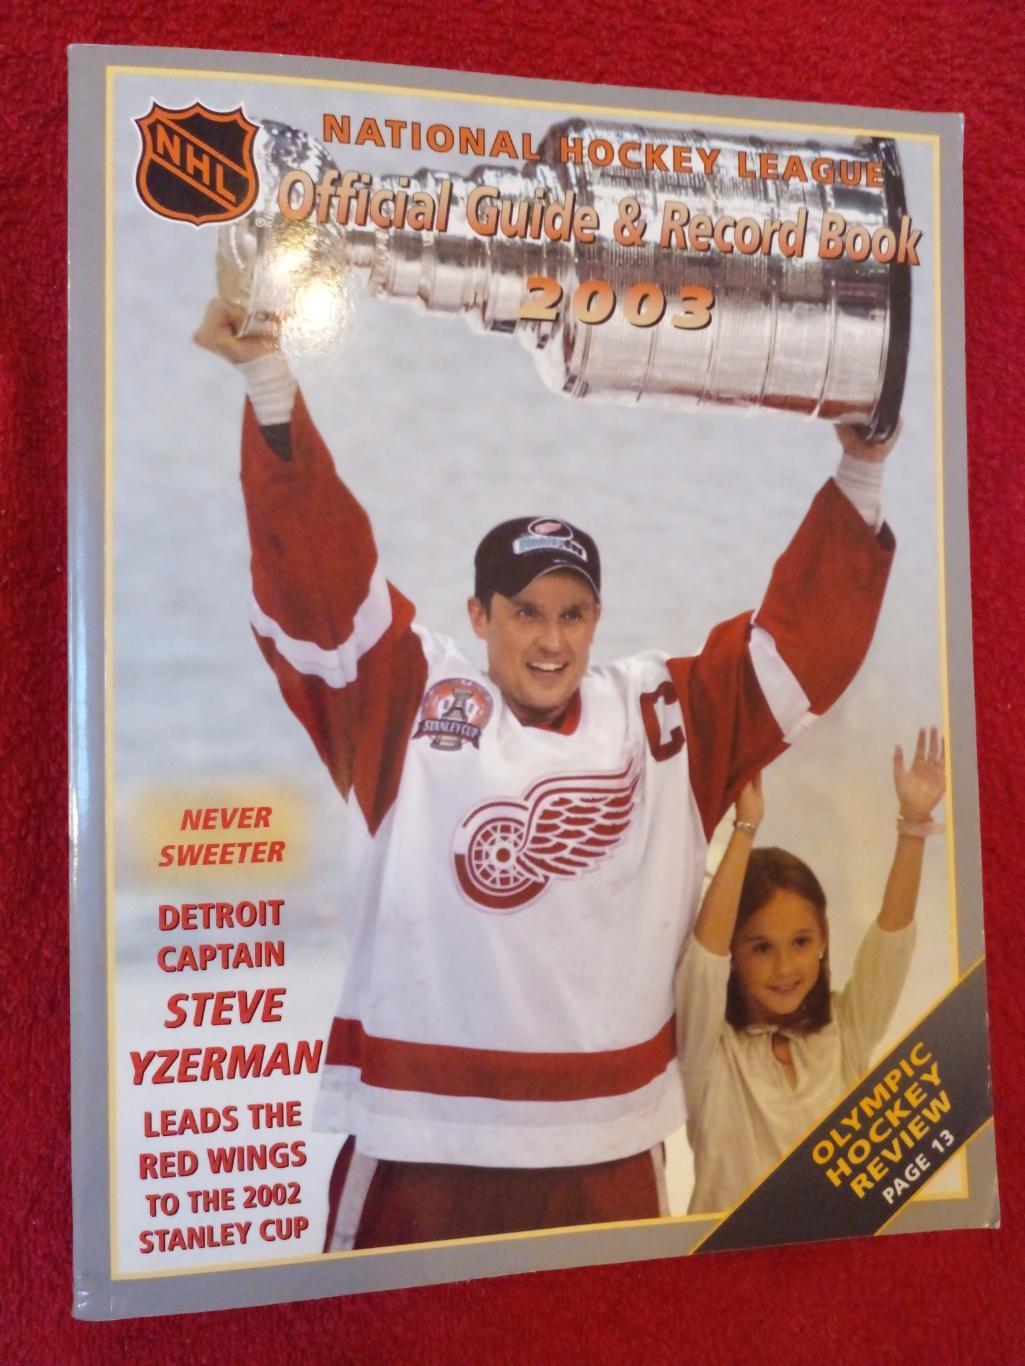 Хоккей. НХЛ - Официальный справочник. Сезон 2003